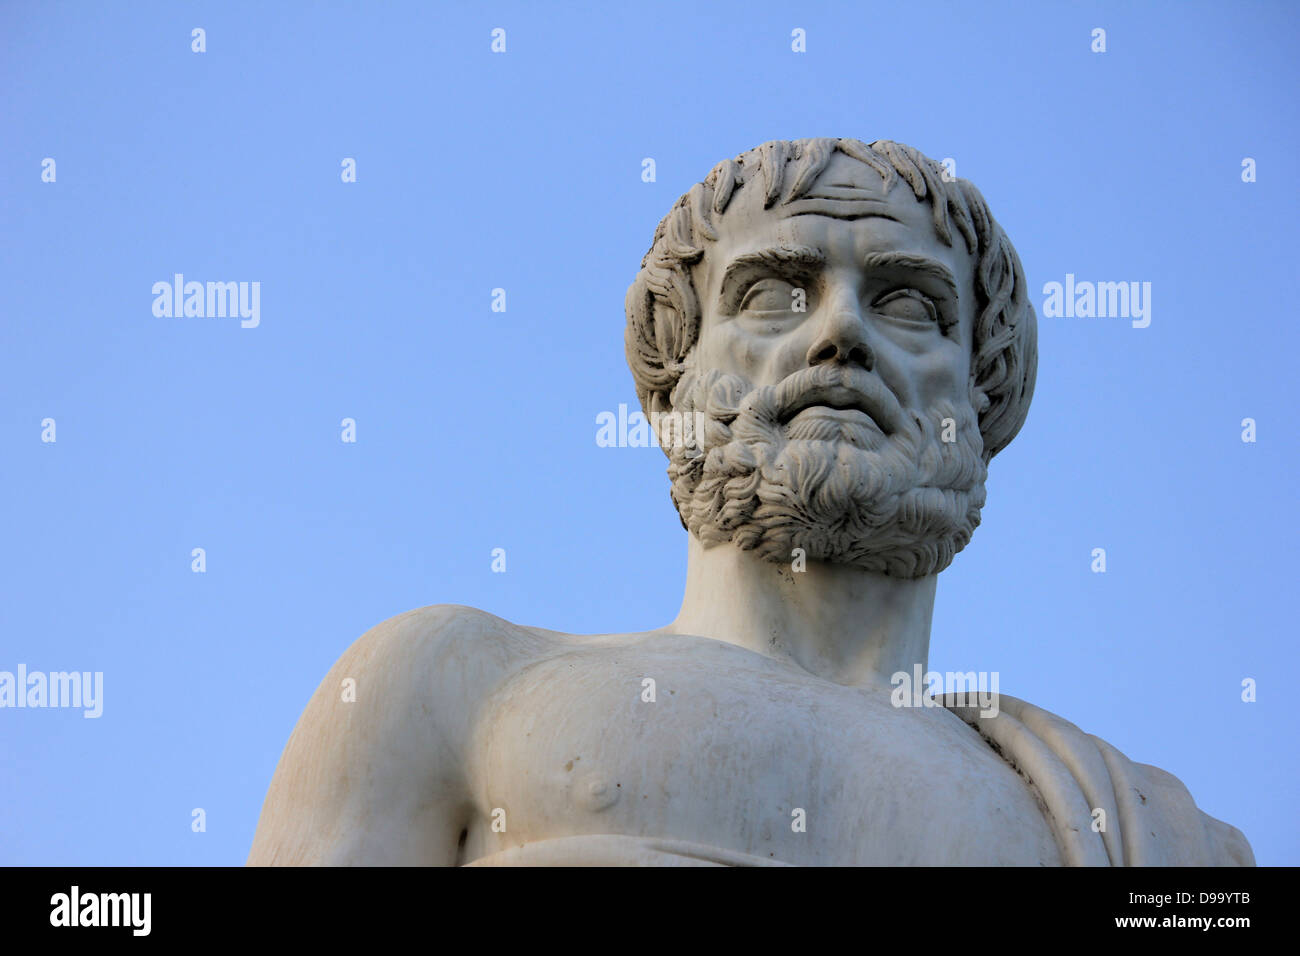 Statue d'Aristote en Grèce Chalcidique Stagira, lieu de naissance, philosophe grec, Aristote Banque D'Images